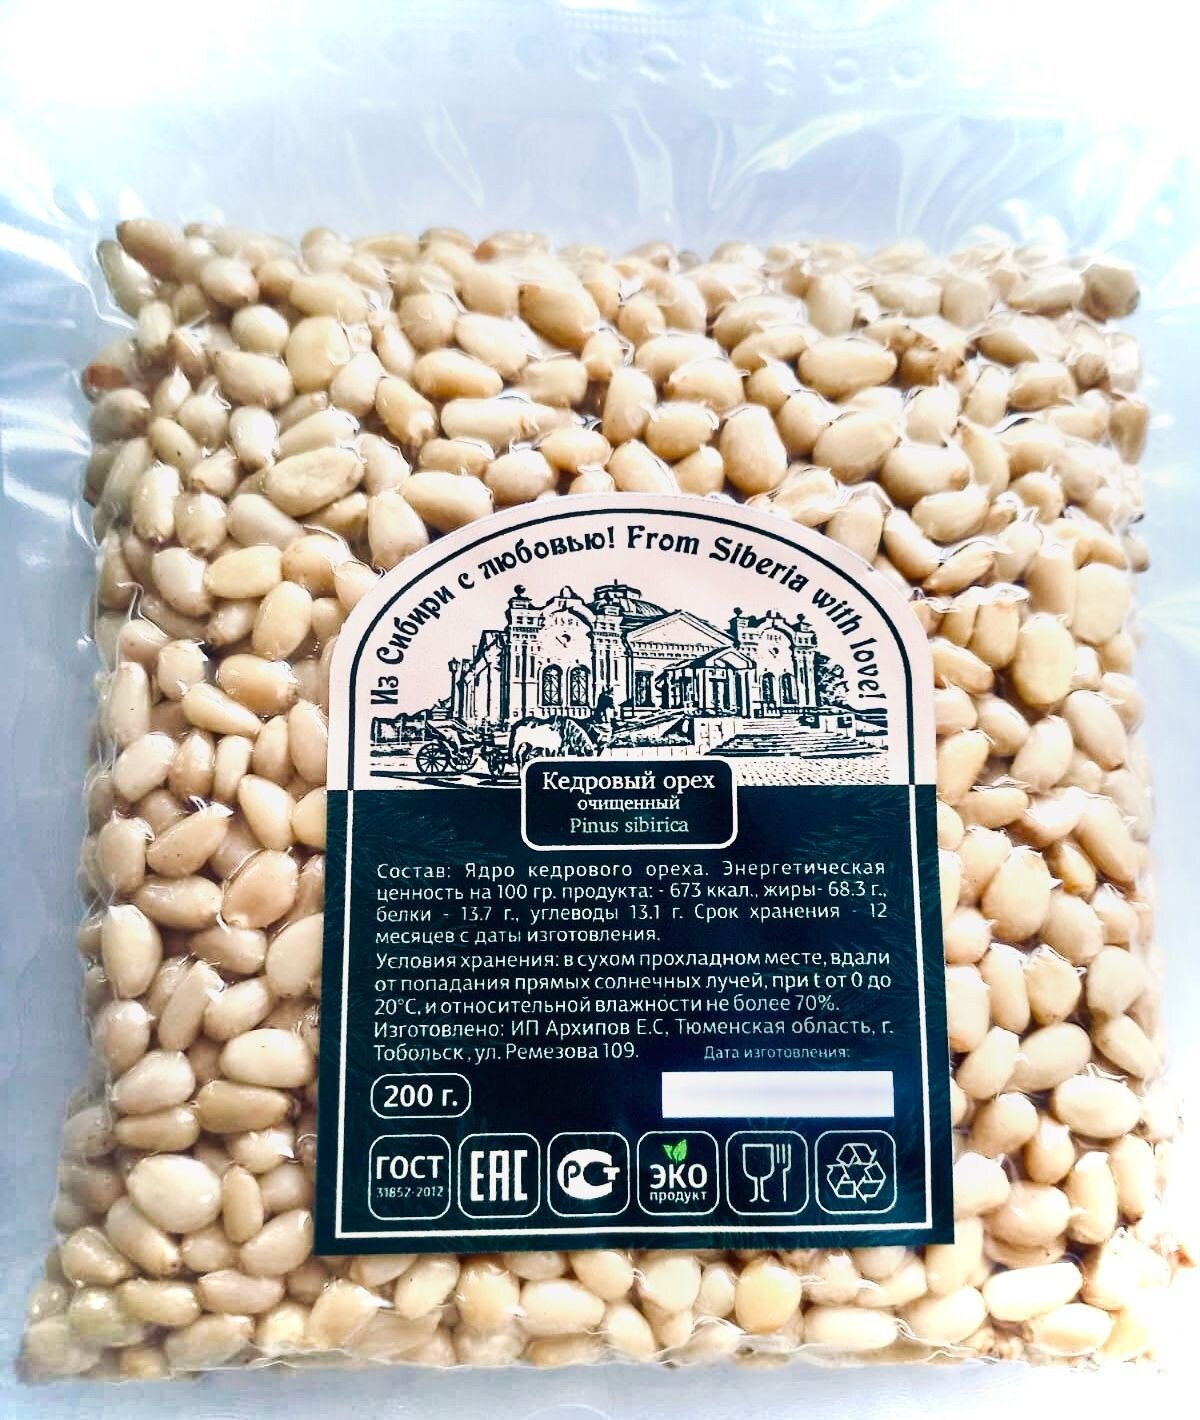 Кедровые орехи очищенные высший сорт 200 грамм. "Тобольск."